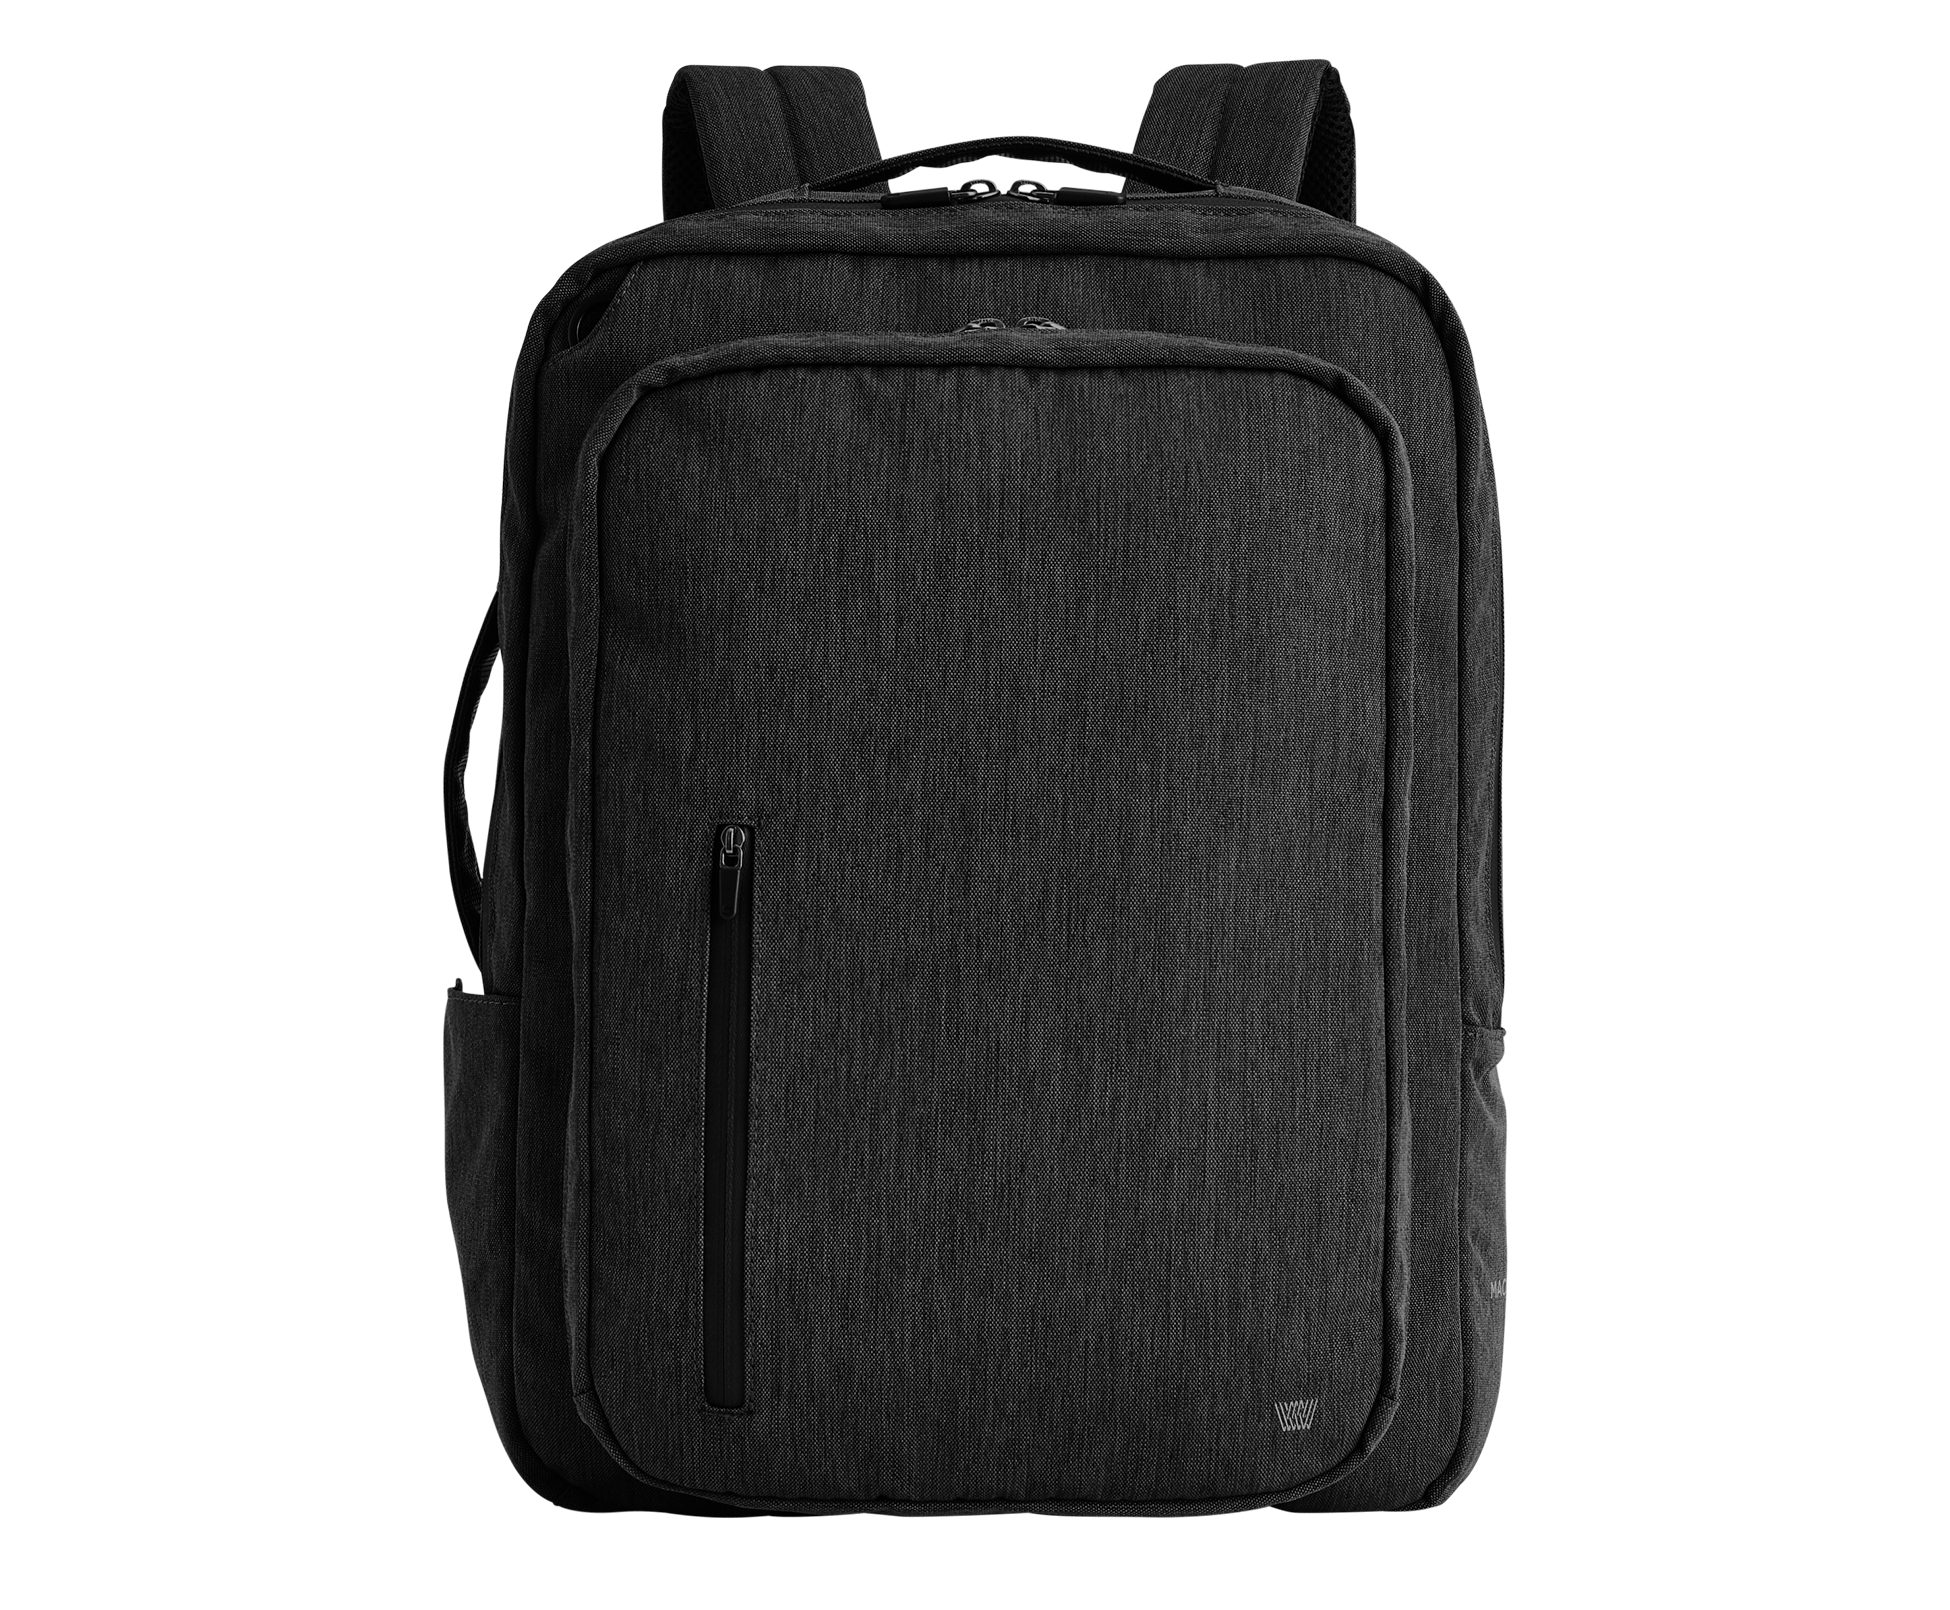 Backpack Unisex Priority School Bags at Rs 480/bag in Vadodara | ID:  16056513448